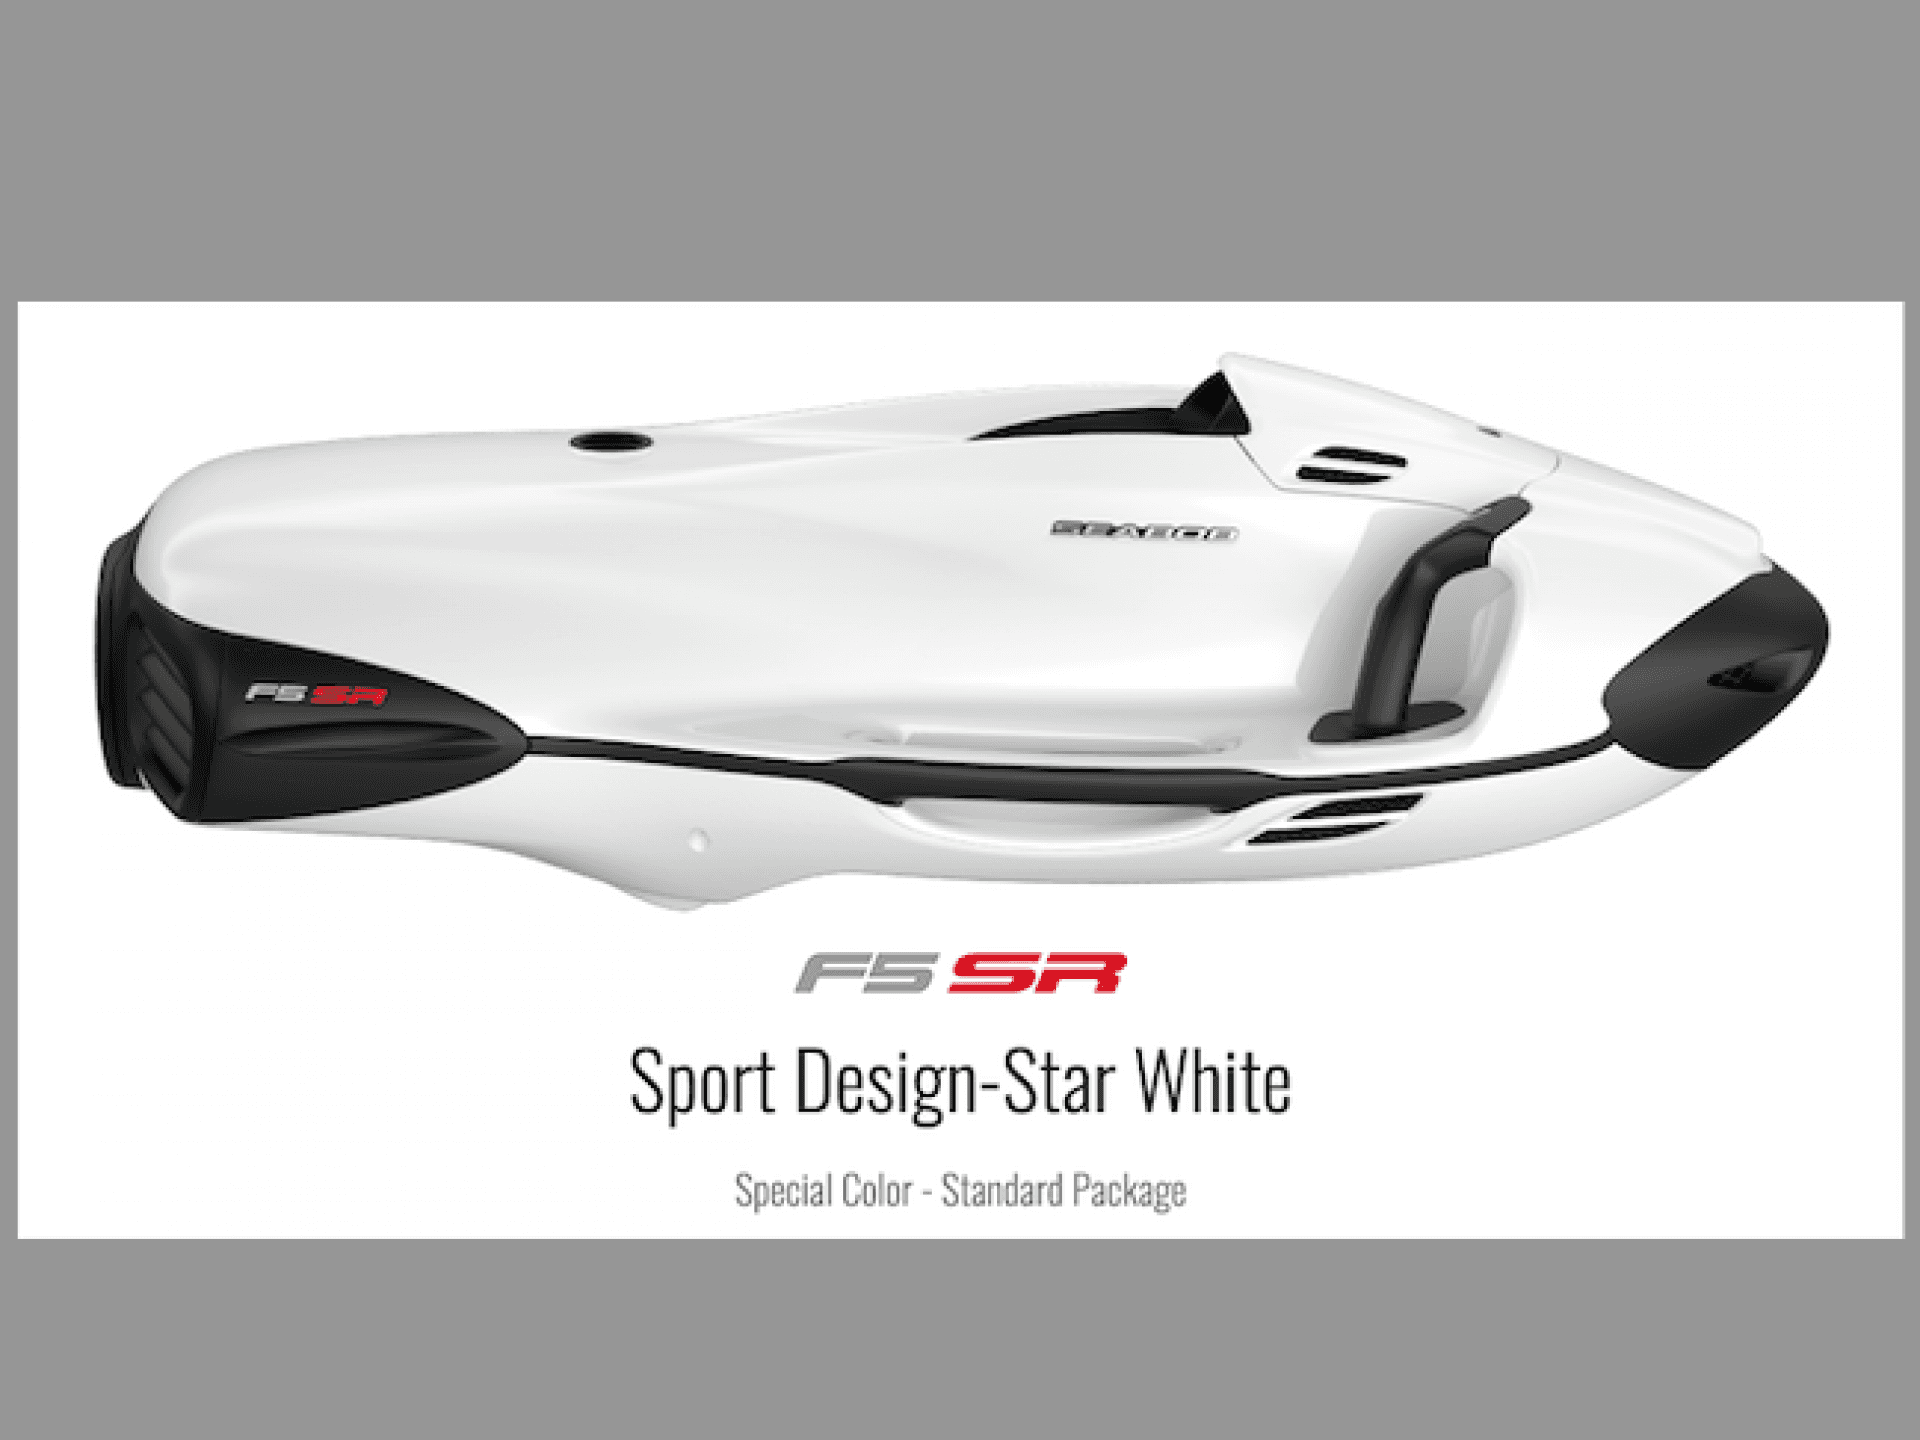 Seabob F5SR CAM SPORT DESIGN STAR WHITE + BK